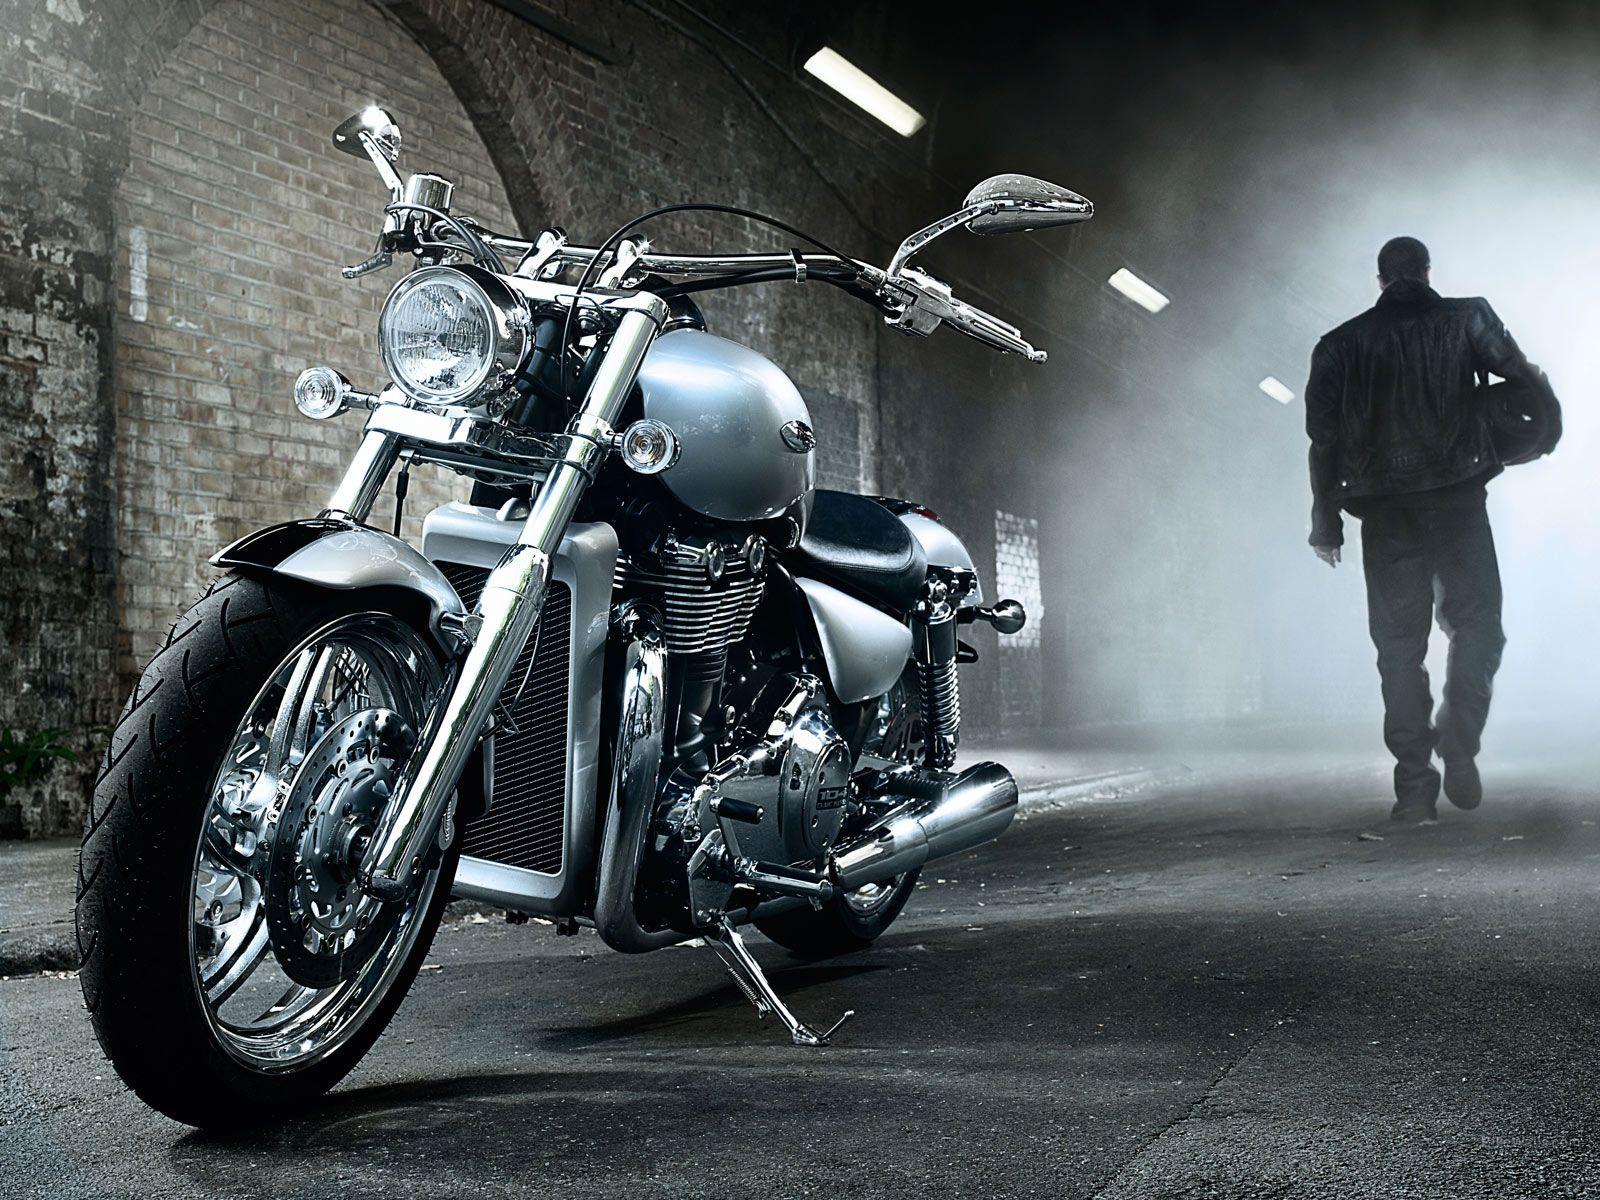 Best HD Motorcycle Wallpaper